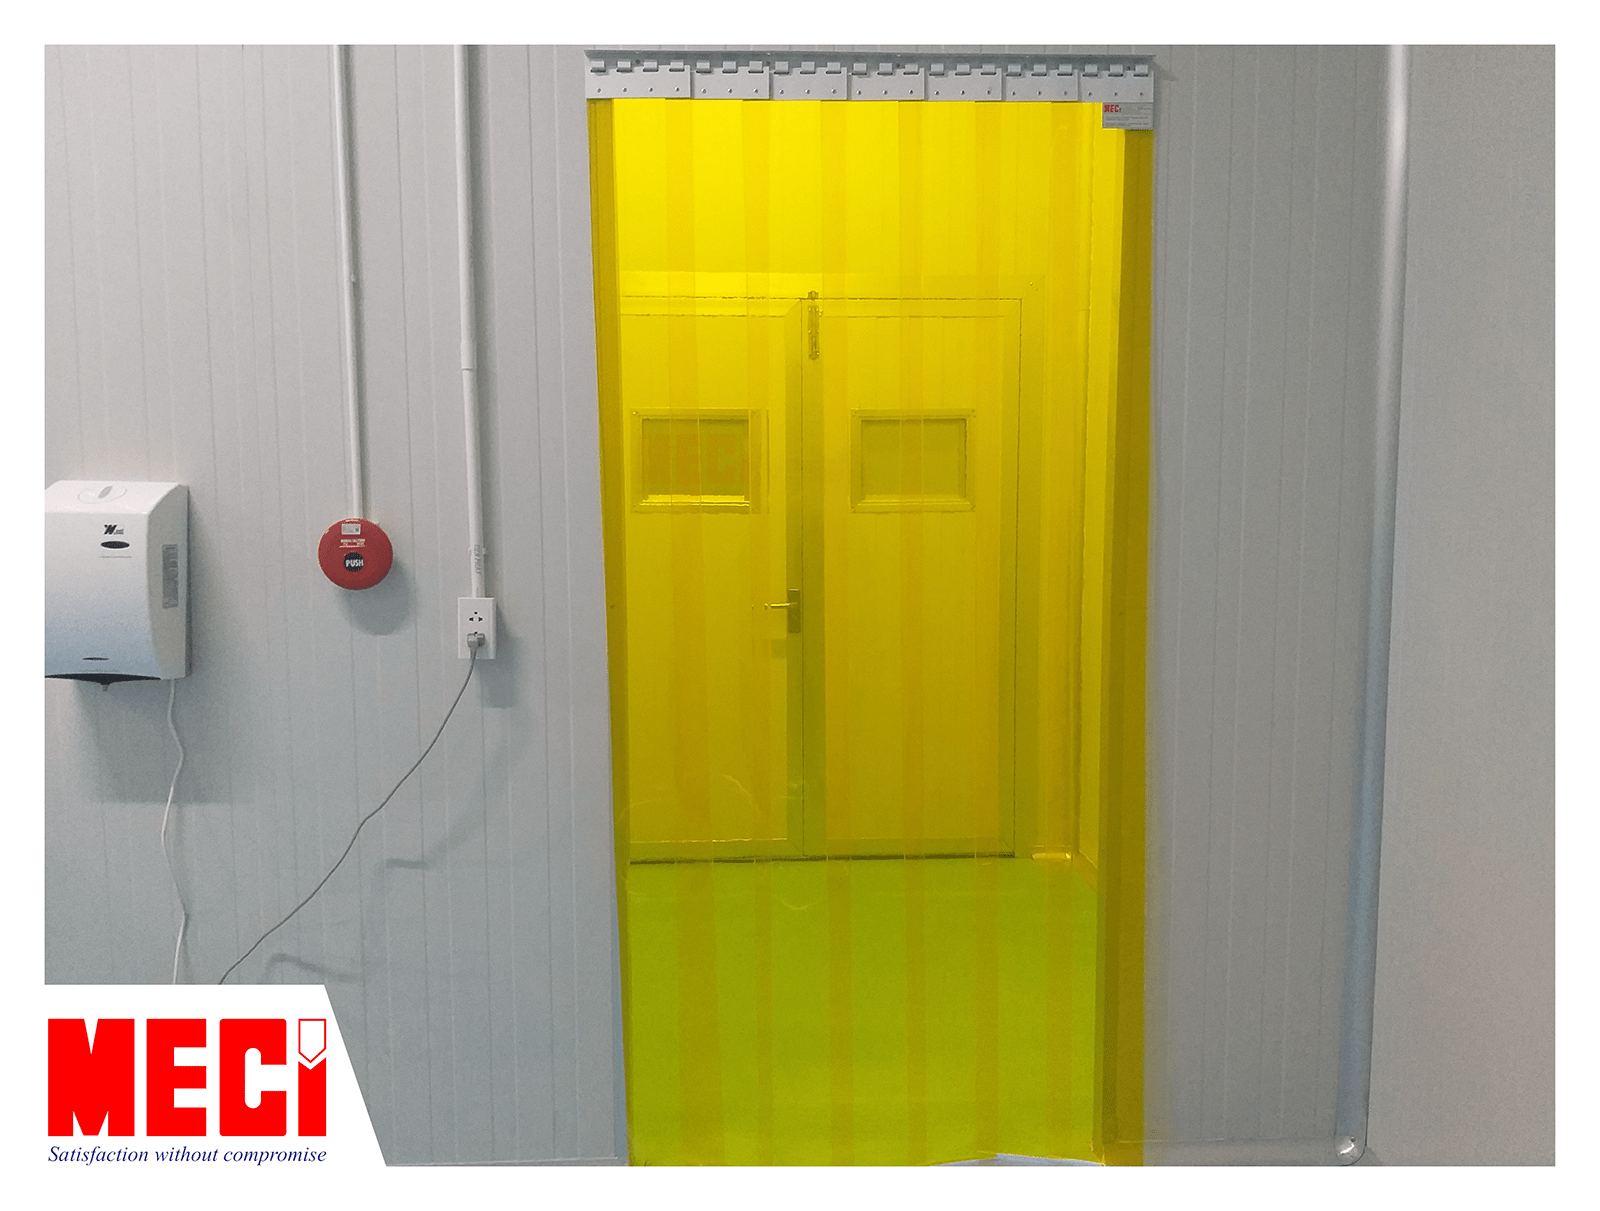 Rèm nhựa PVC màu vàng trong lắp tại lối ra vào phòng sạch, phía sau là cửa phòng sạch